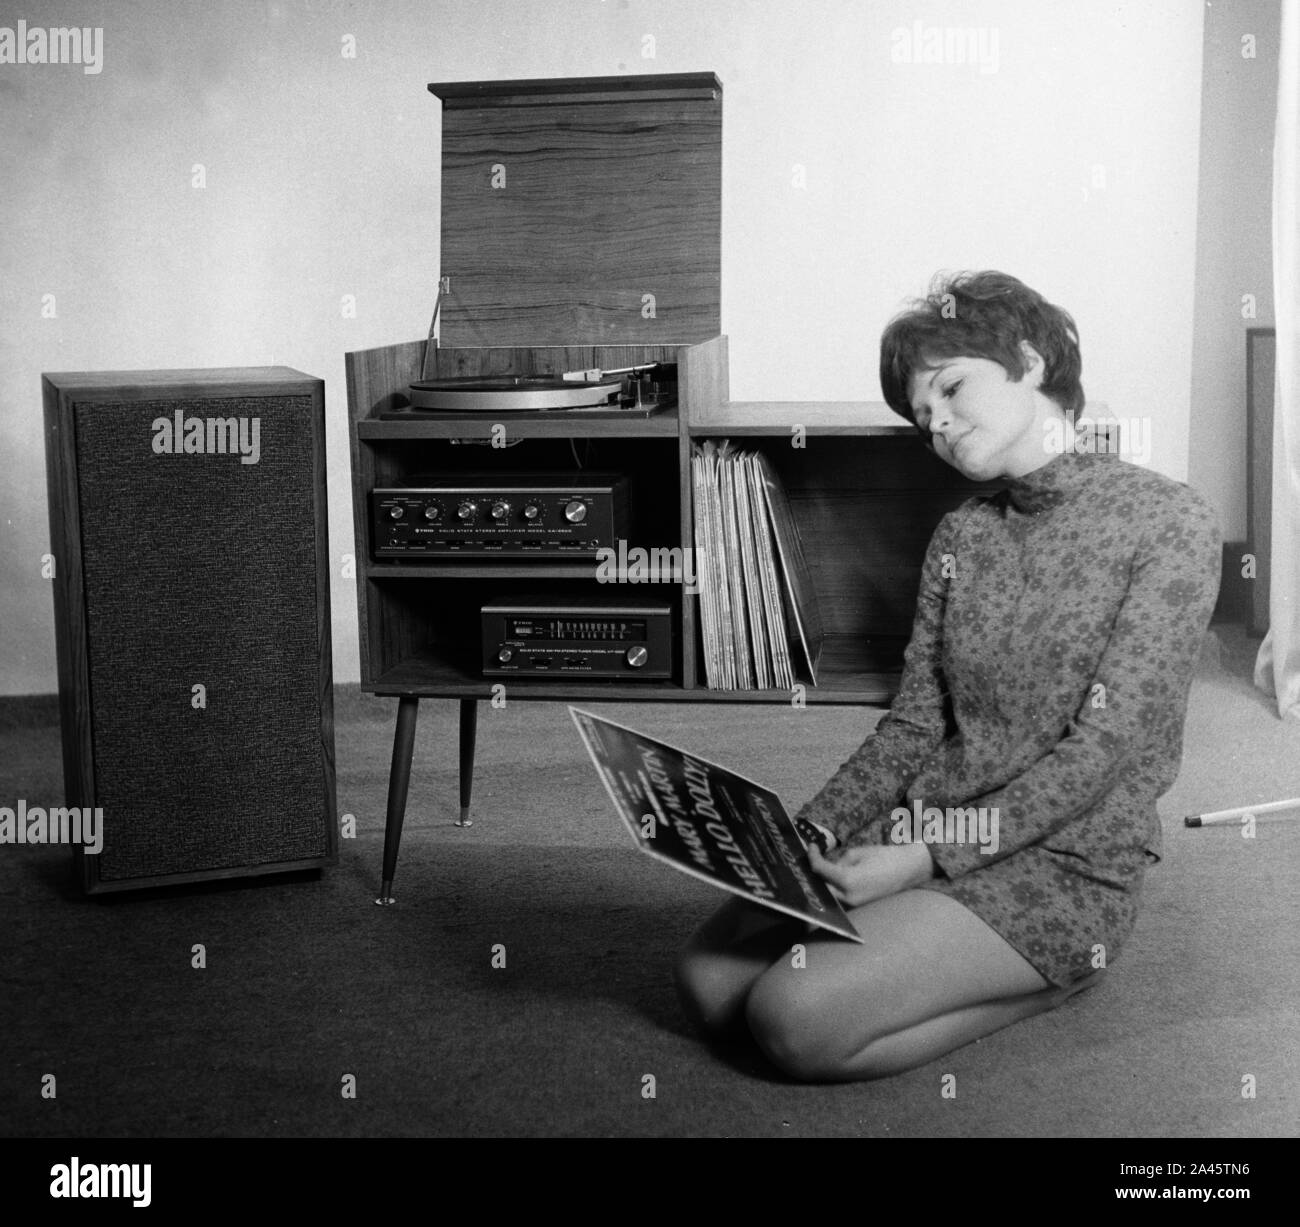 Modell mit kurzen Haaren stellt in einem mini-kleid mit Stereo Sound System c 1969 Foto von Tony Henshaw Archiv Stockfoto